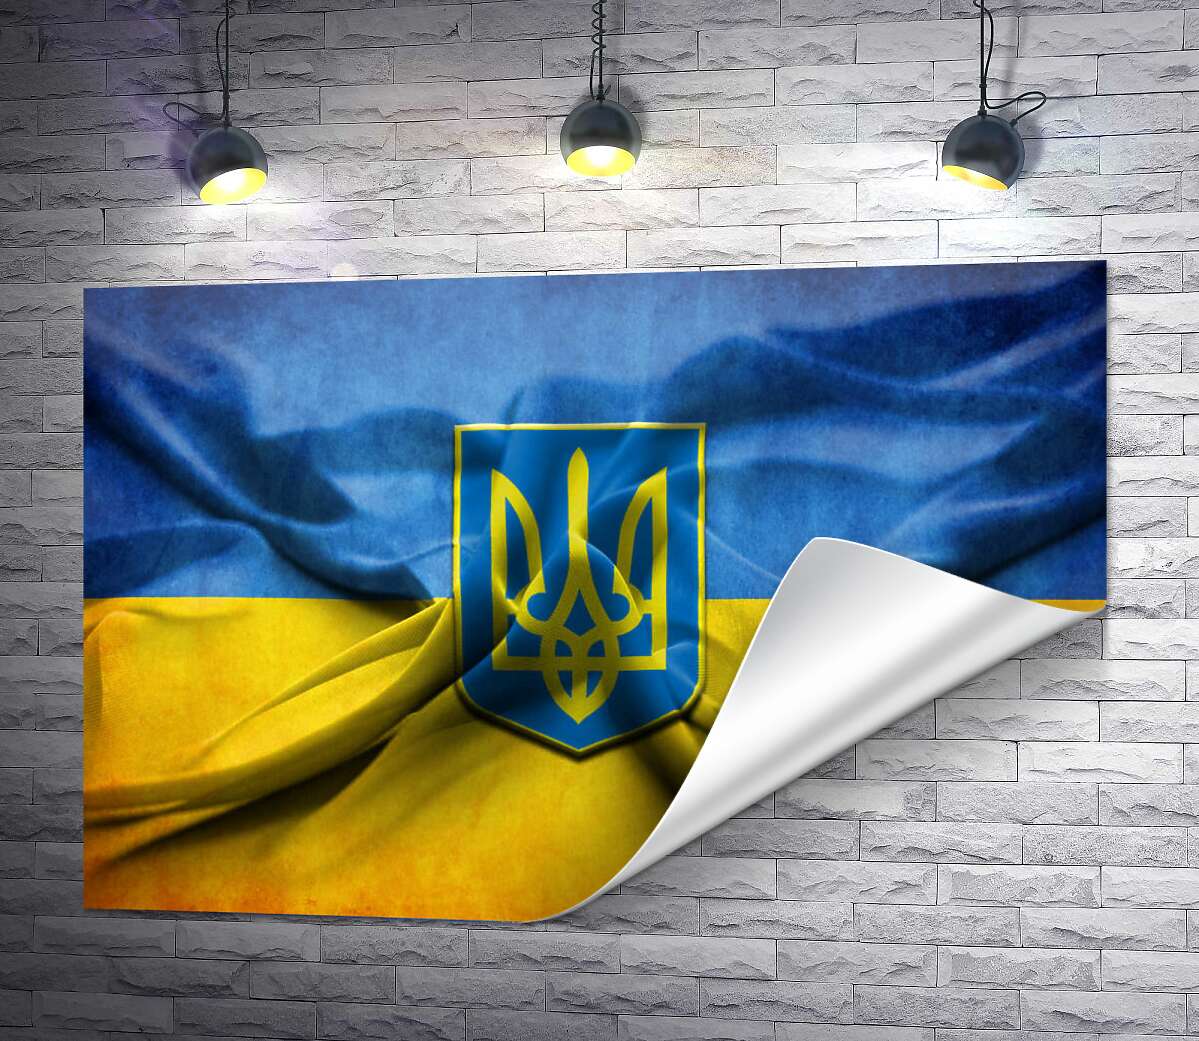 друк Герб України на жовто-блакитних складках прапору